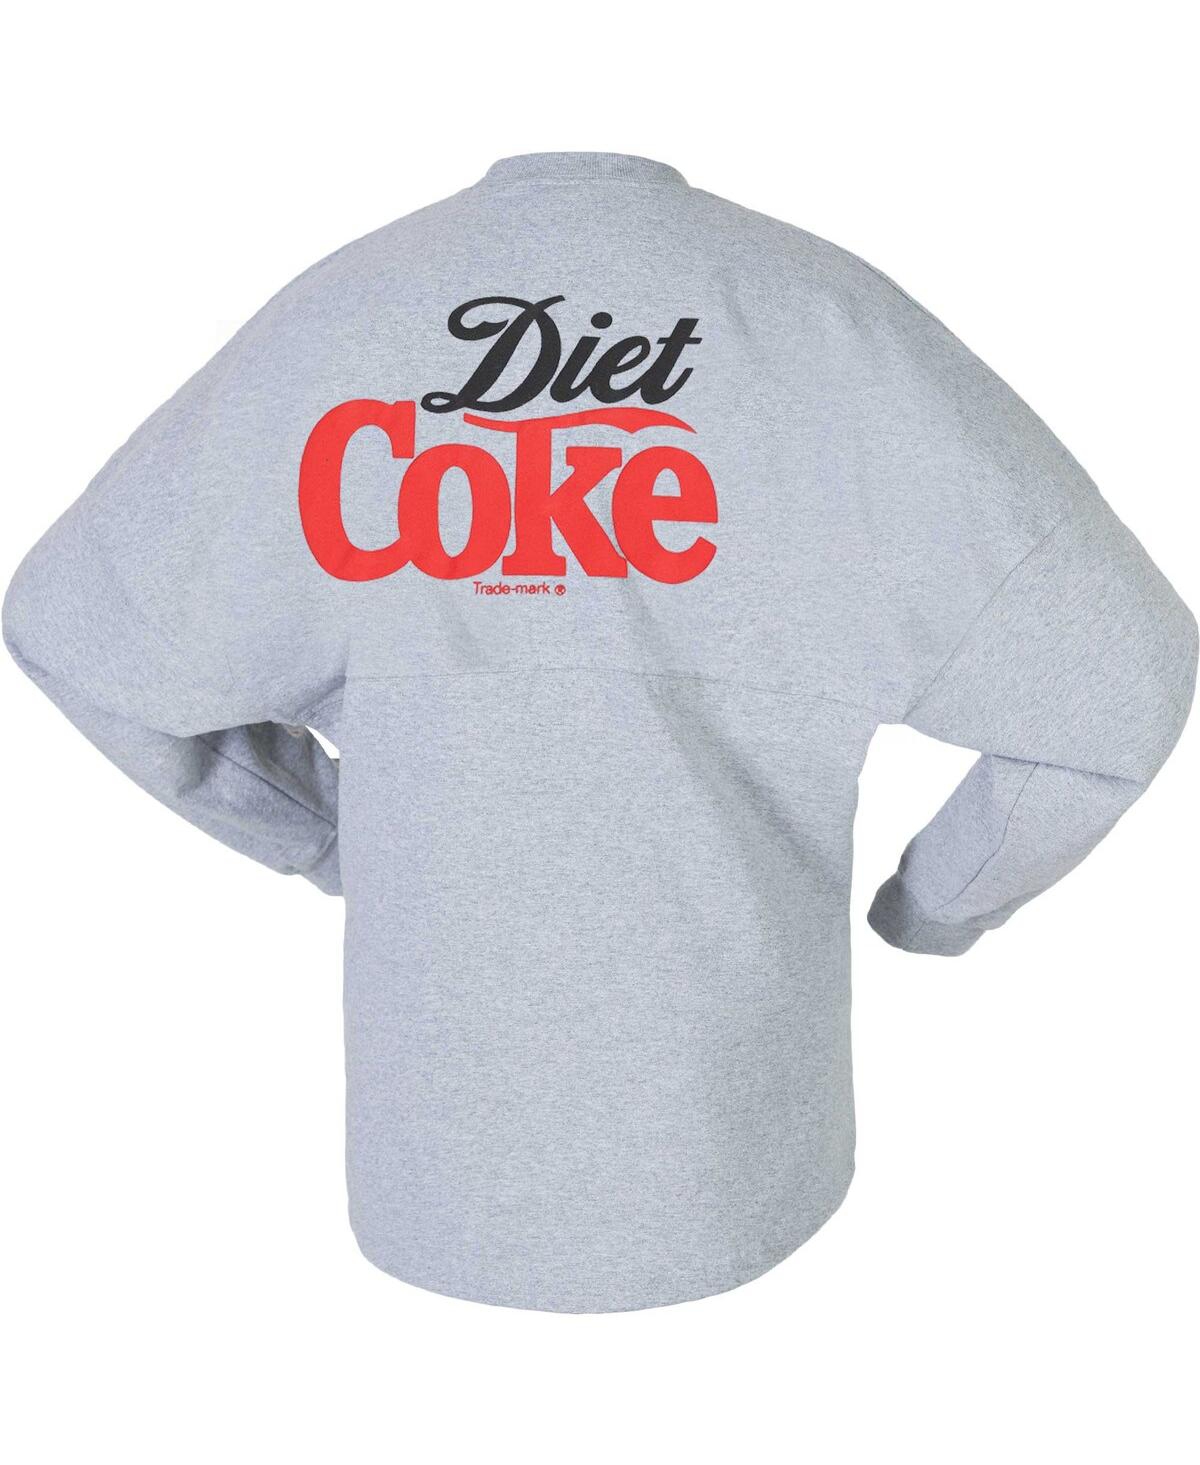 Shop Spirit Jersey Men's And Women's Heather Gray Diet Coke Long Sleeve T-shirt